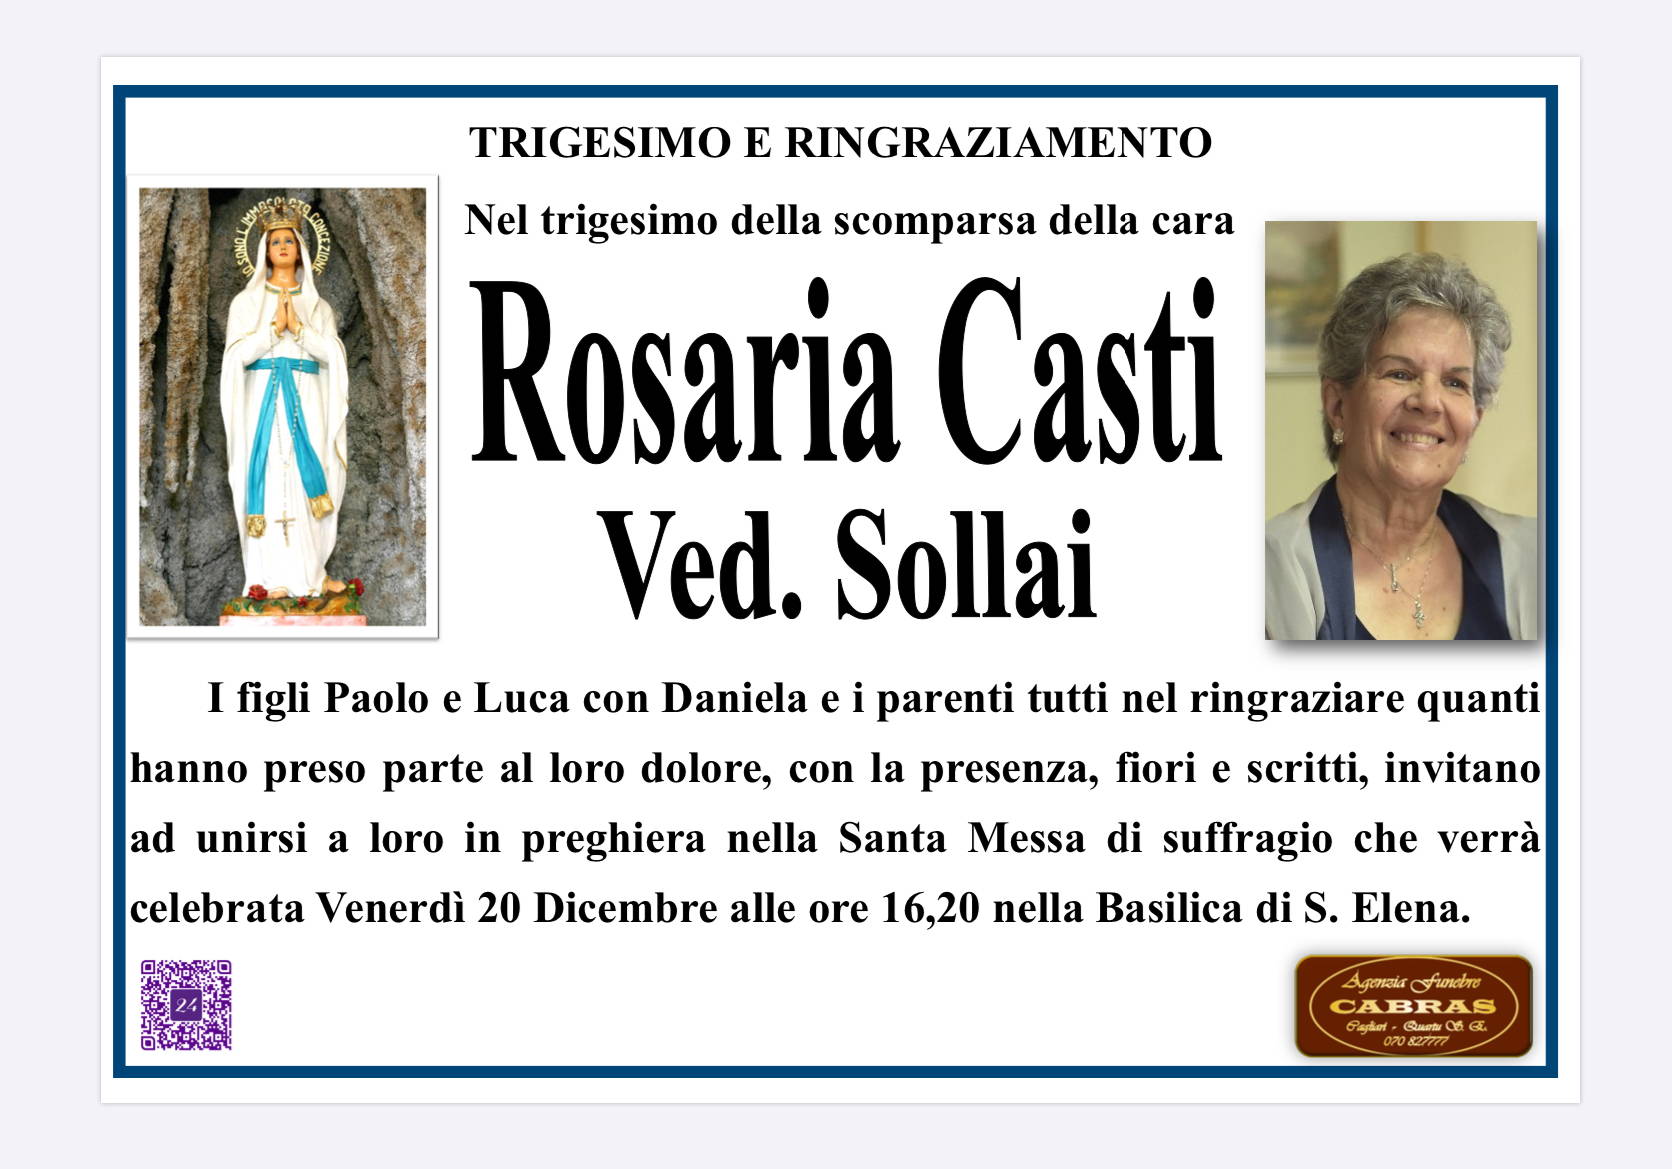 Rosaria Casti